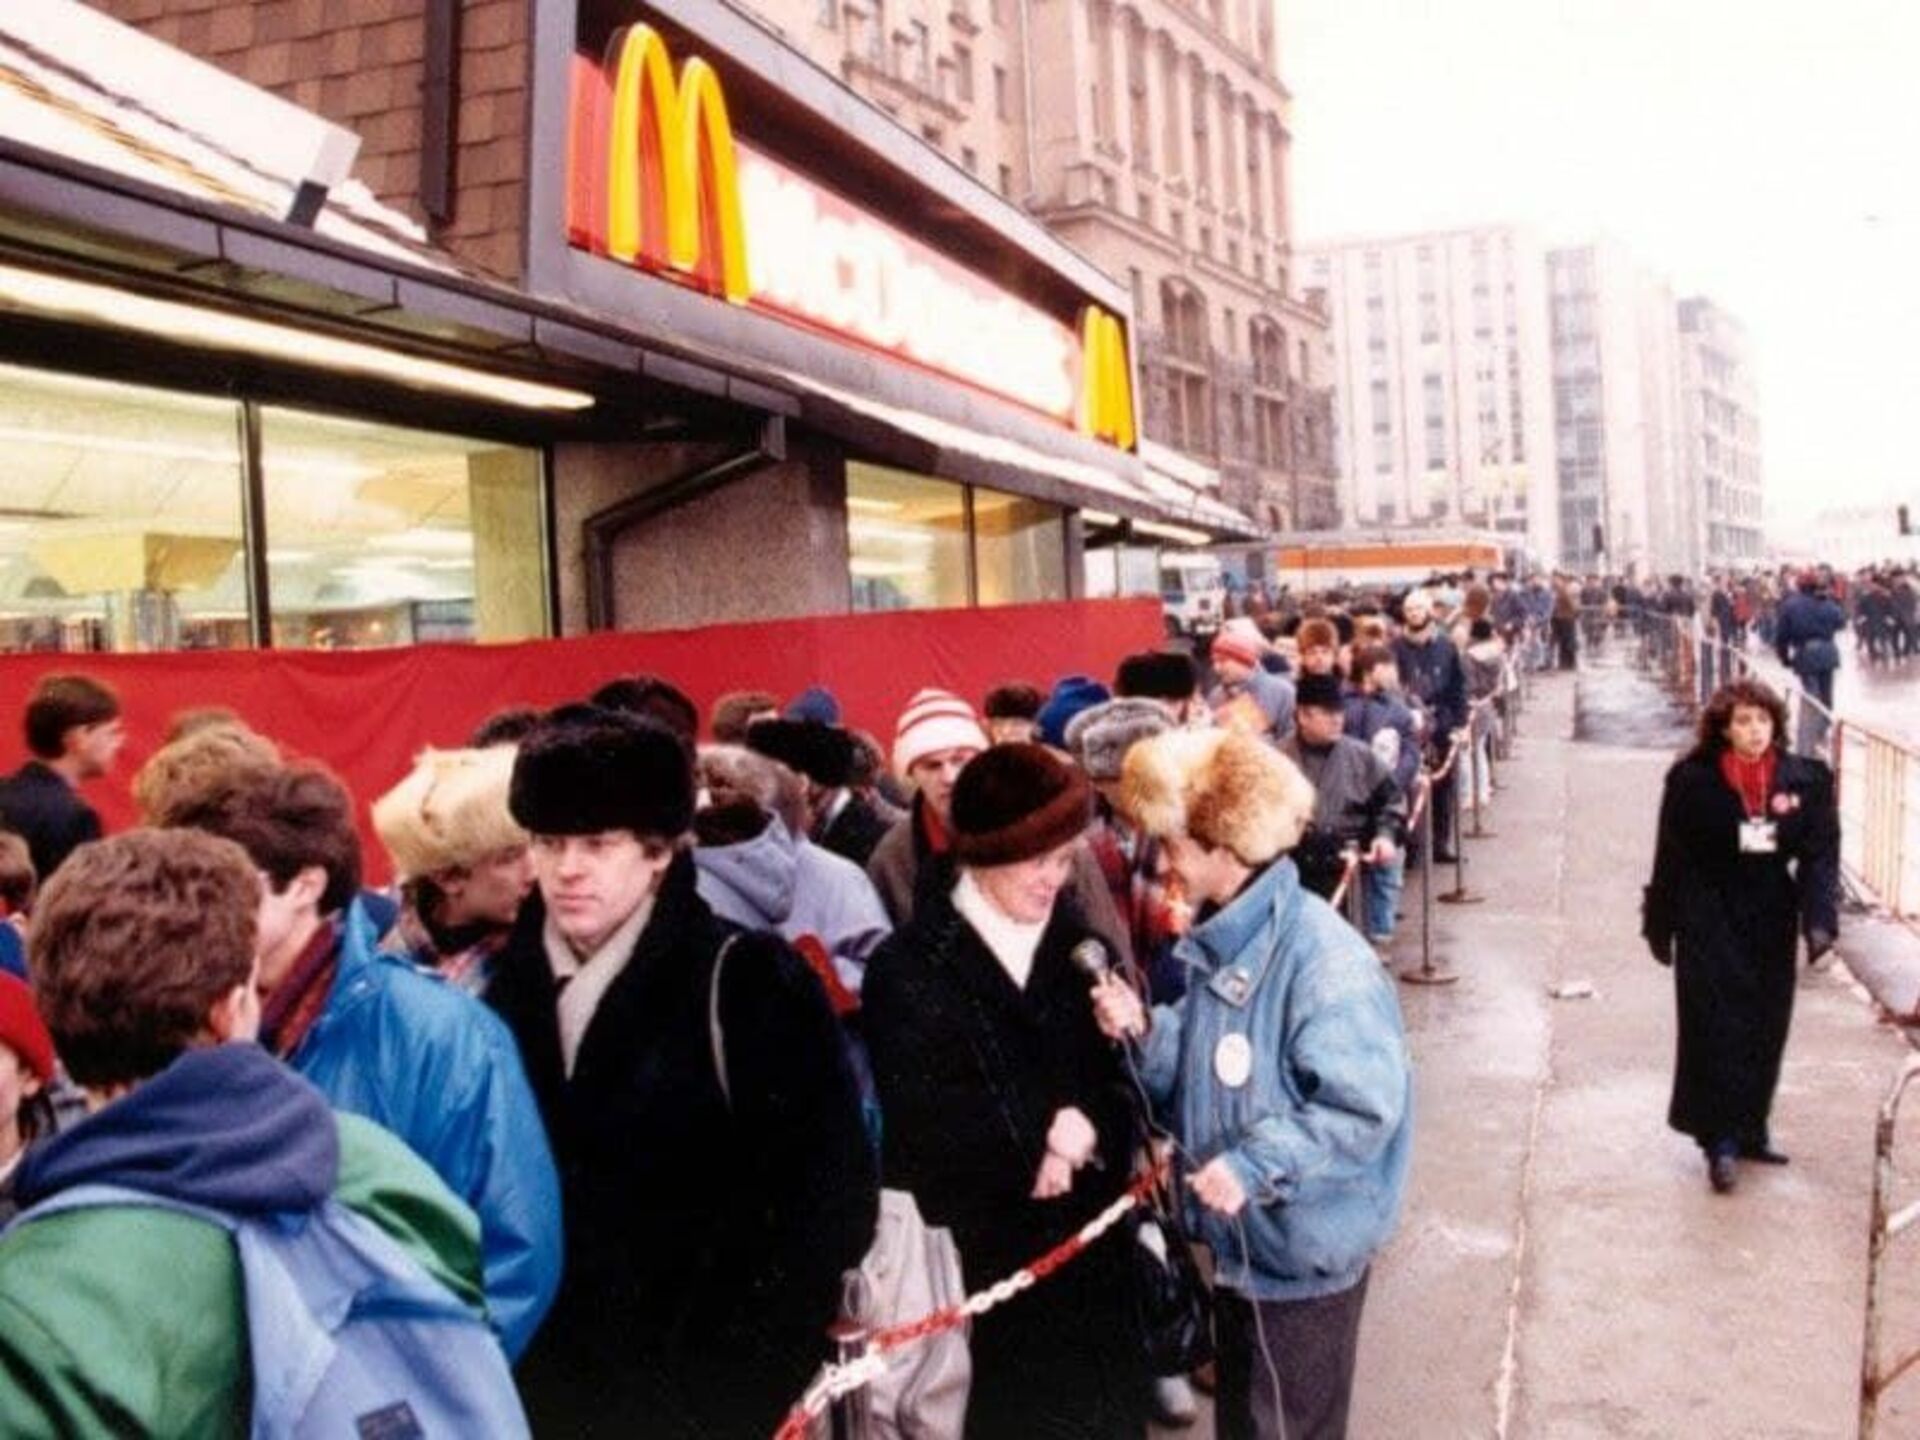 Какие макдональдсы открылись в москве. Открытие первого Макдональдса в Москве в 1990 году. Очередь в первый макдональдс в Москве 1990. Макдональдс 1990 Москва. Макдональдс в 1990 году в Москве.